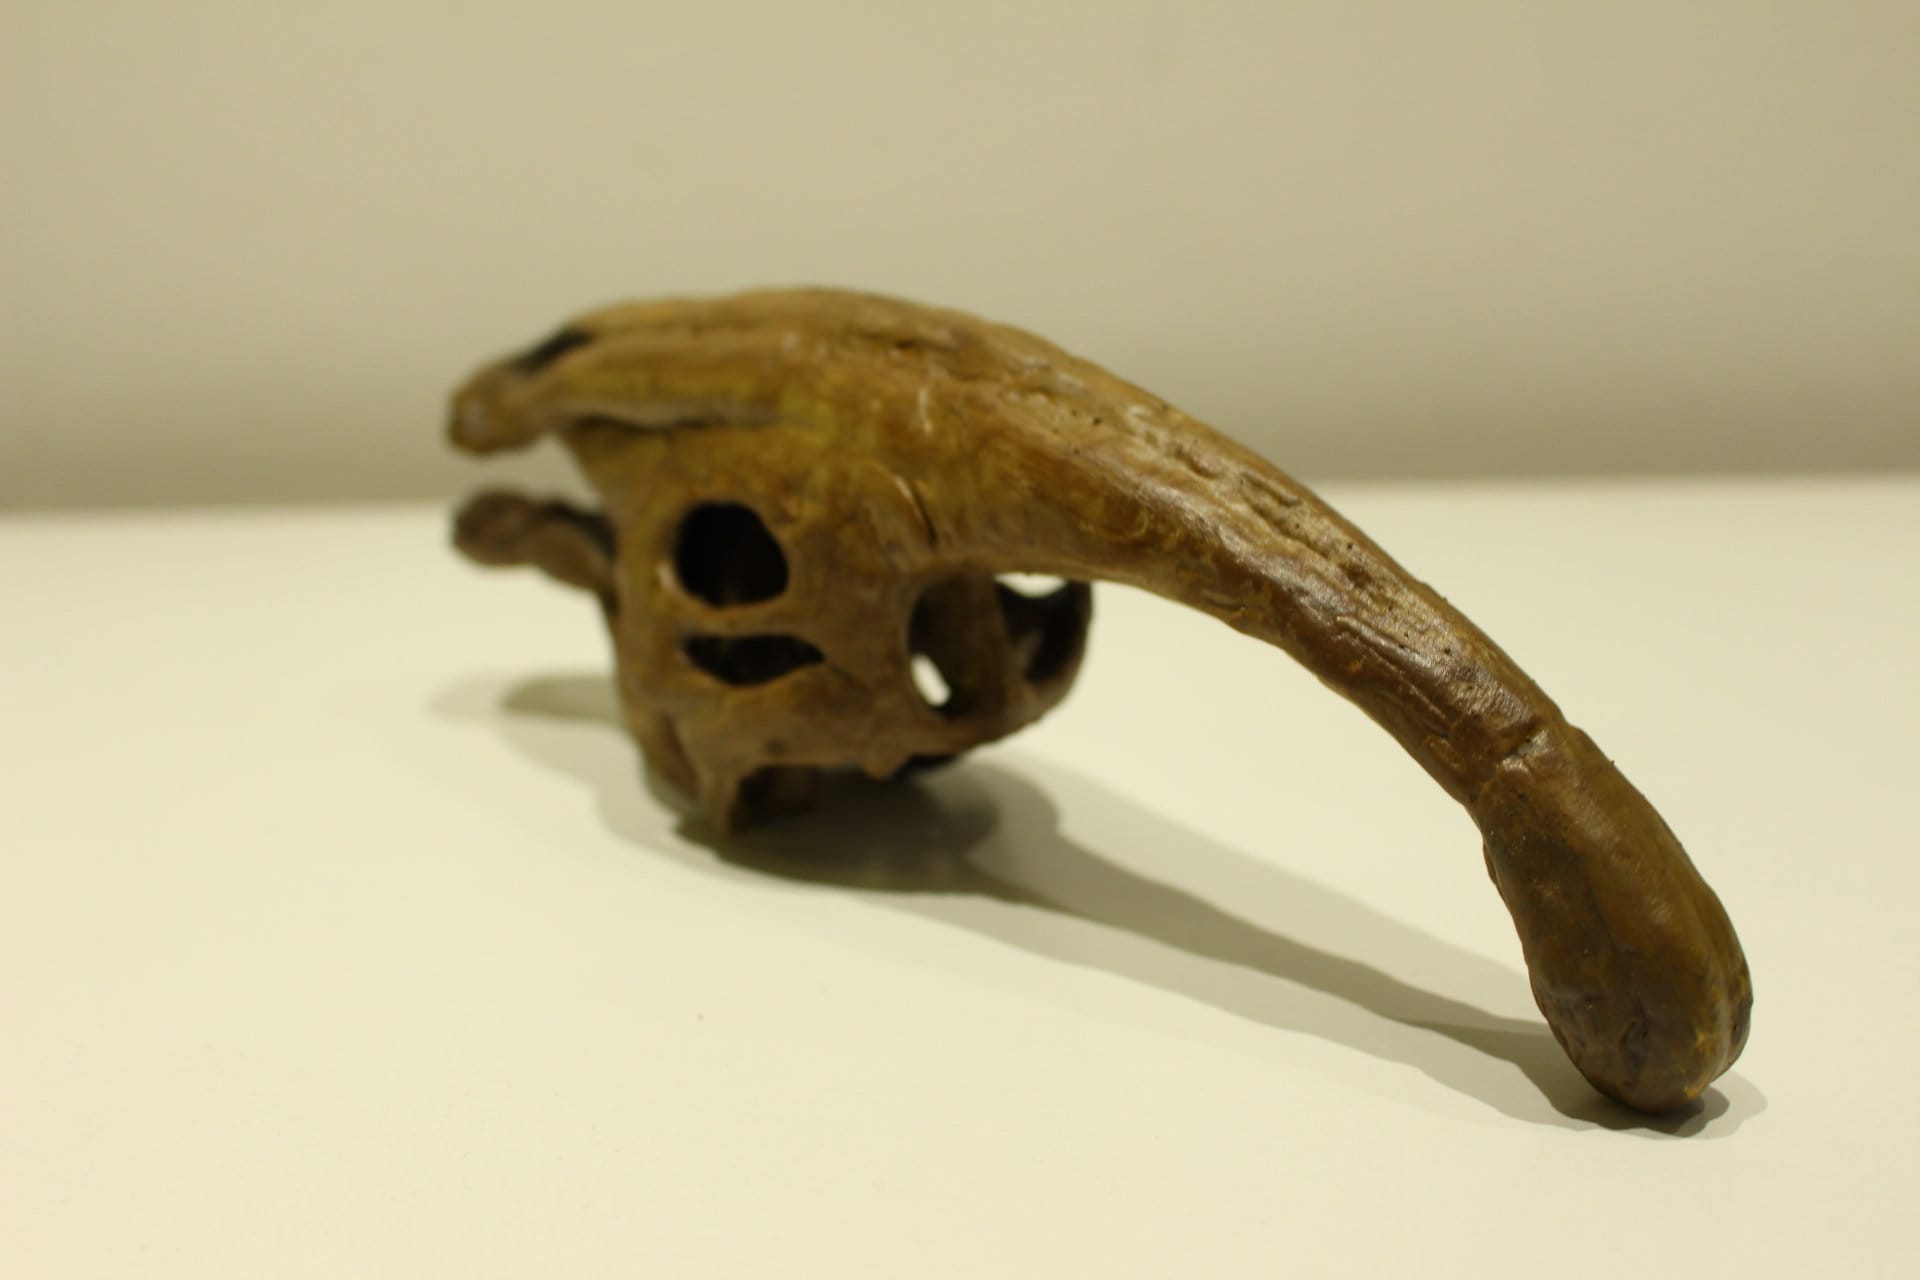 Parasaurolophus Skull Dinosaur Fossil / Dinosour Skull | Etsy UK